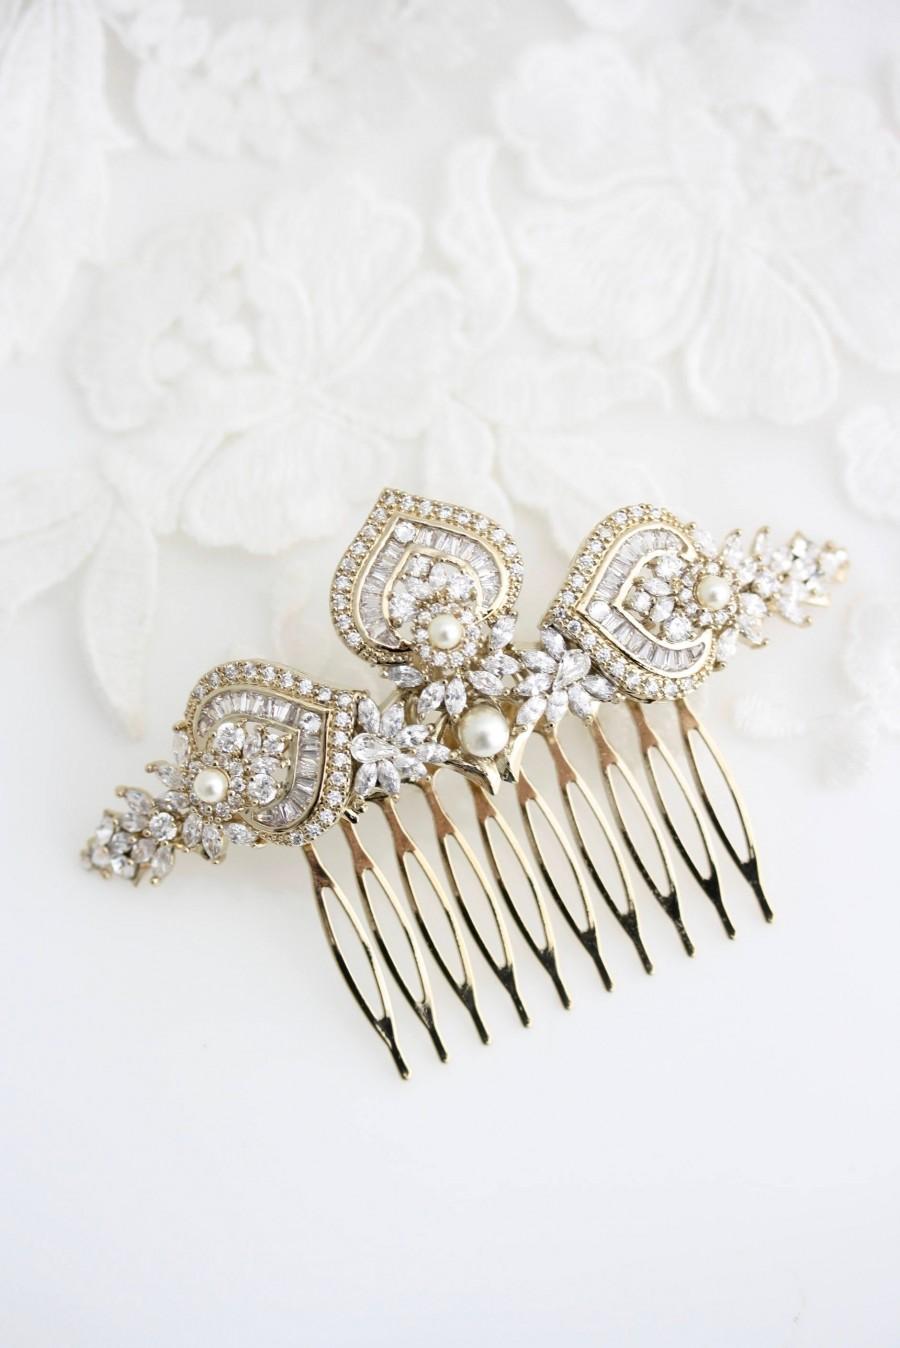 Mariage - Gold Bridal Hair Comb Gold Wedding Headpiece Crystal Hair Comb Yellow Gold Wedding Hair Clip Art Deco Bridal Hair Accessories EVIE L